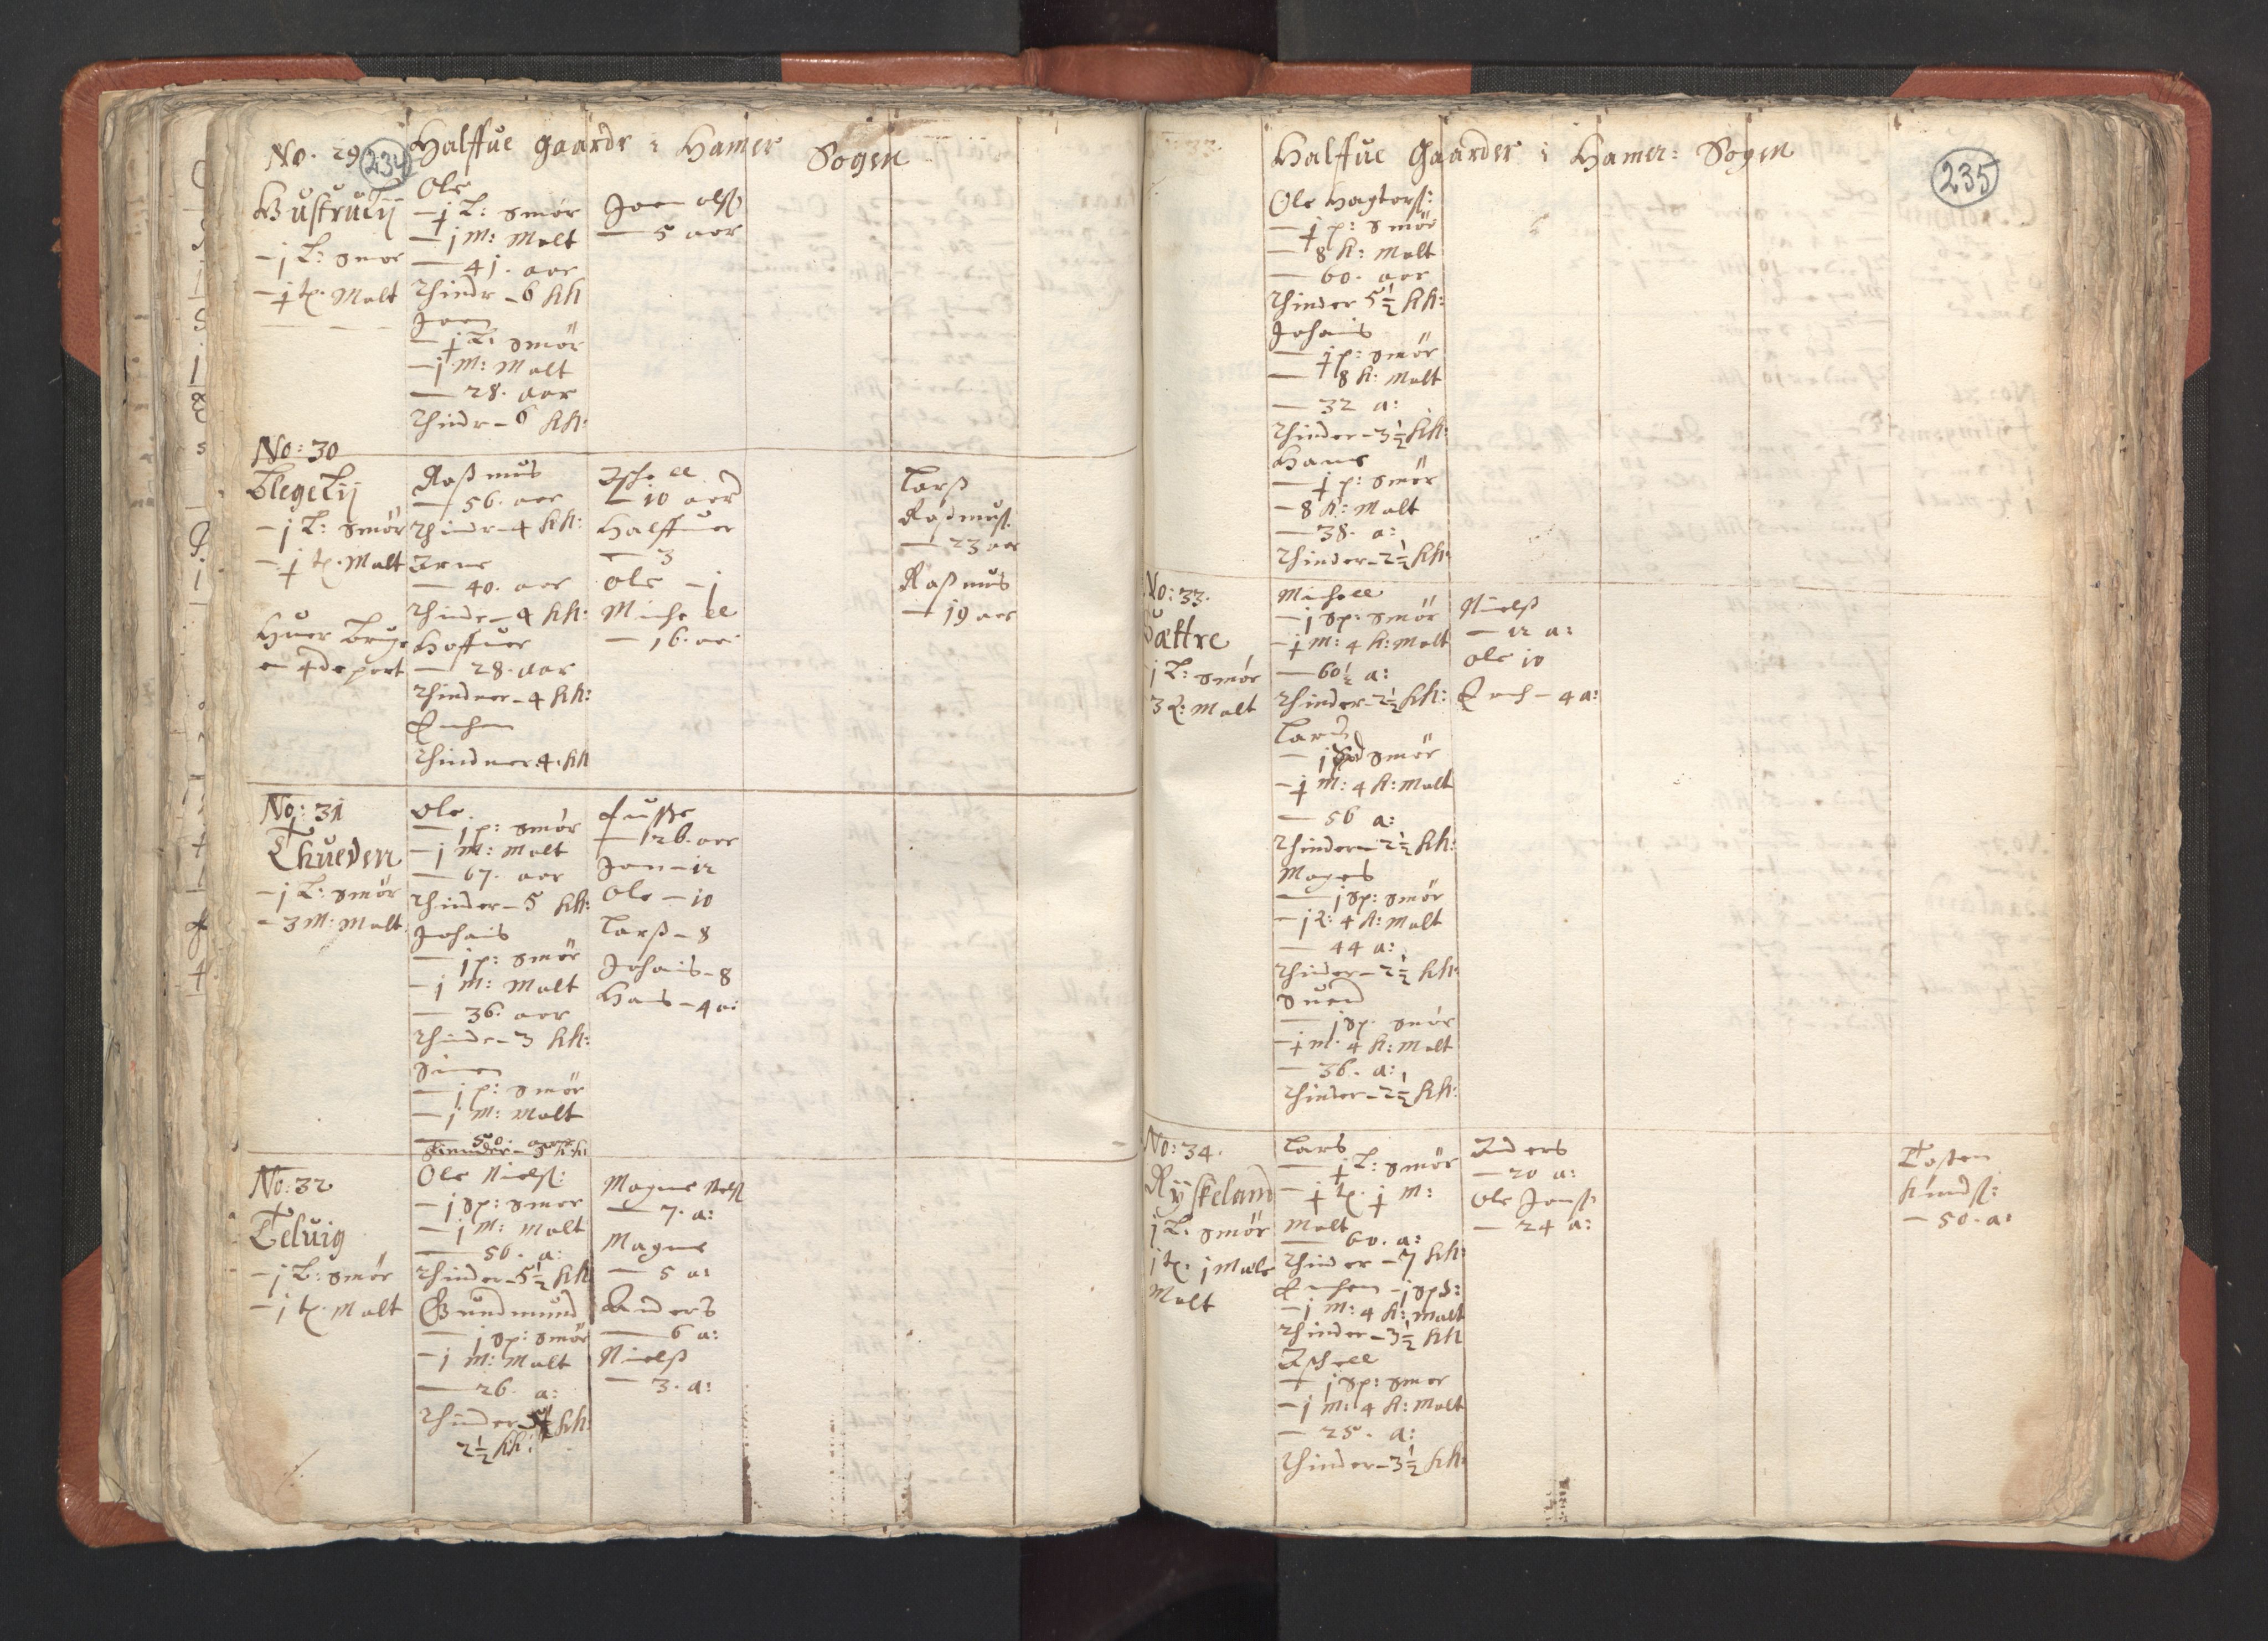 RA, Vicar's Census 1664-1666, no. 22: Nordhordland deanery, 1664-1666, p. 234-235